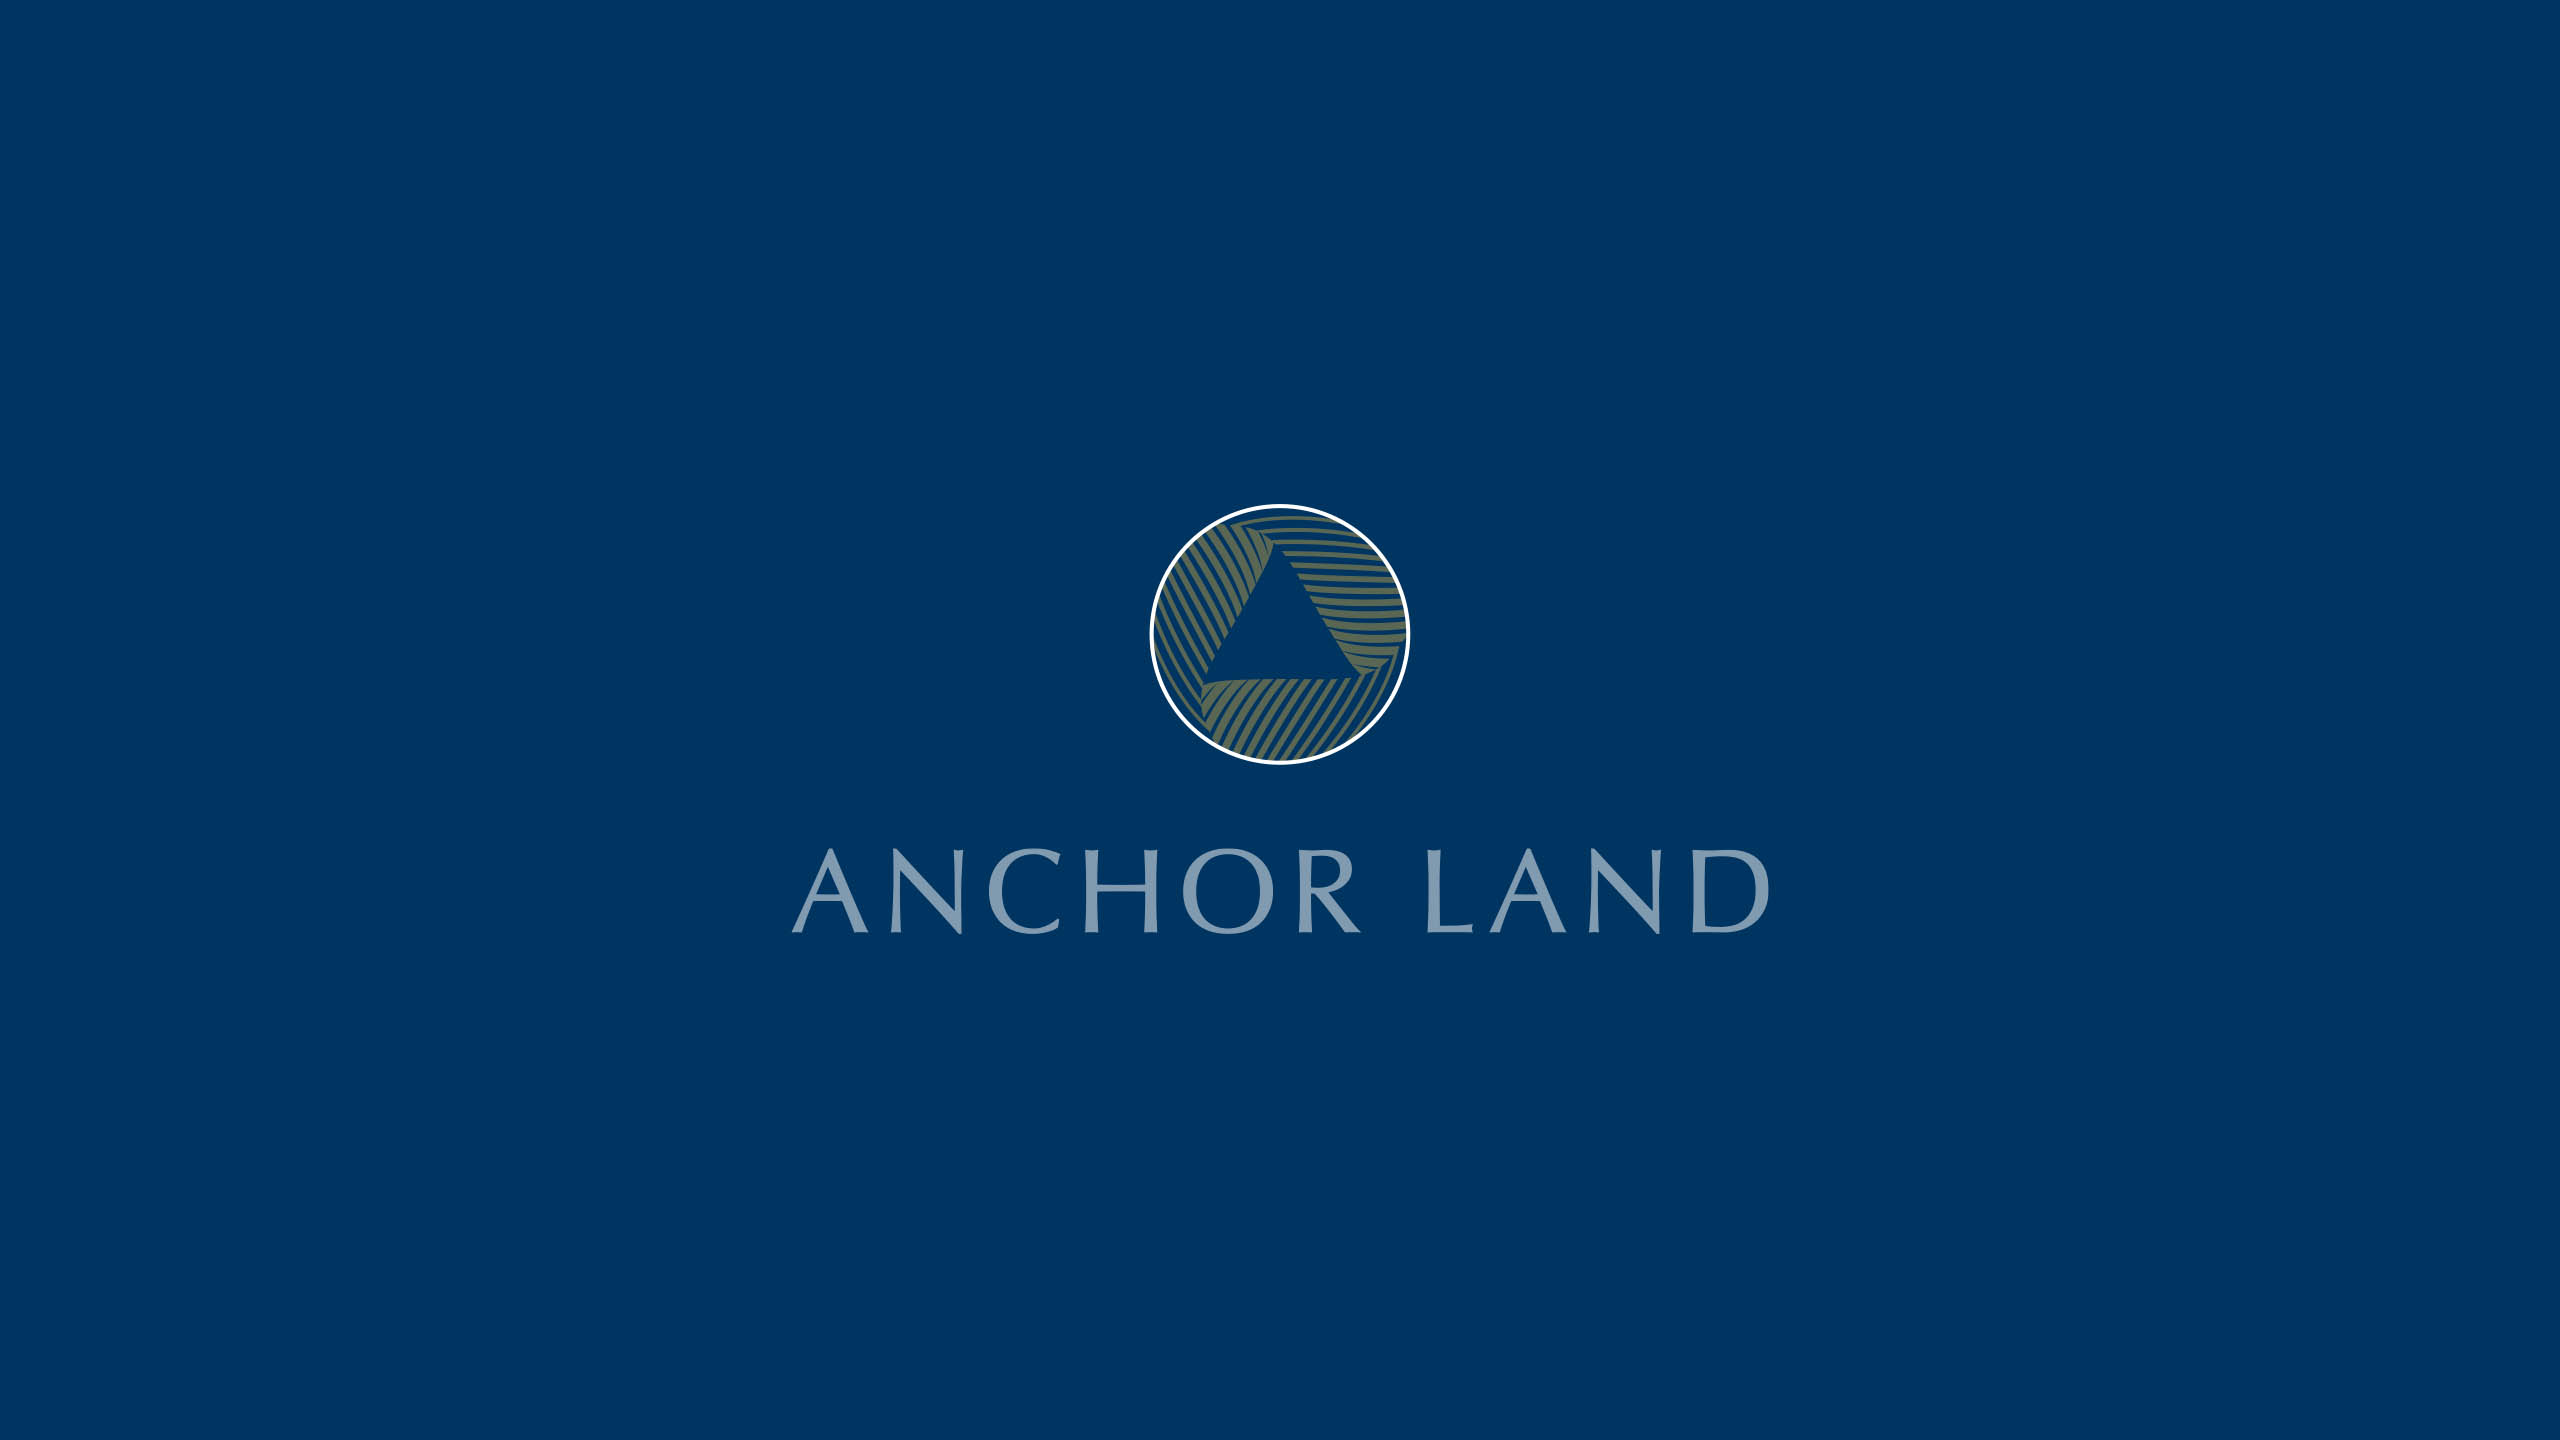 Logo design rationale for property developer brand Anchor Land